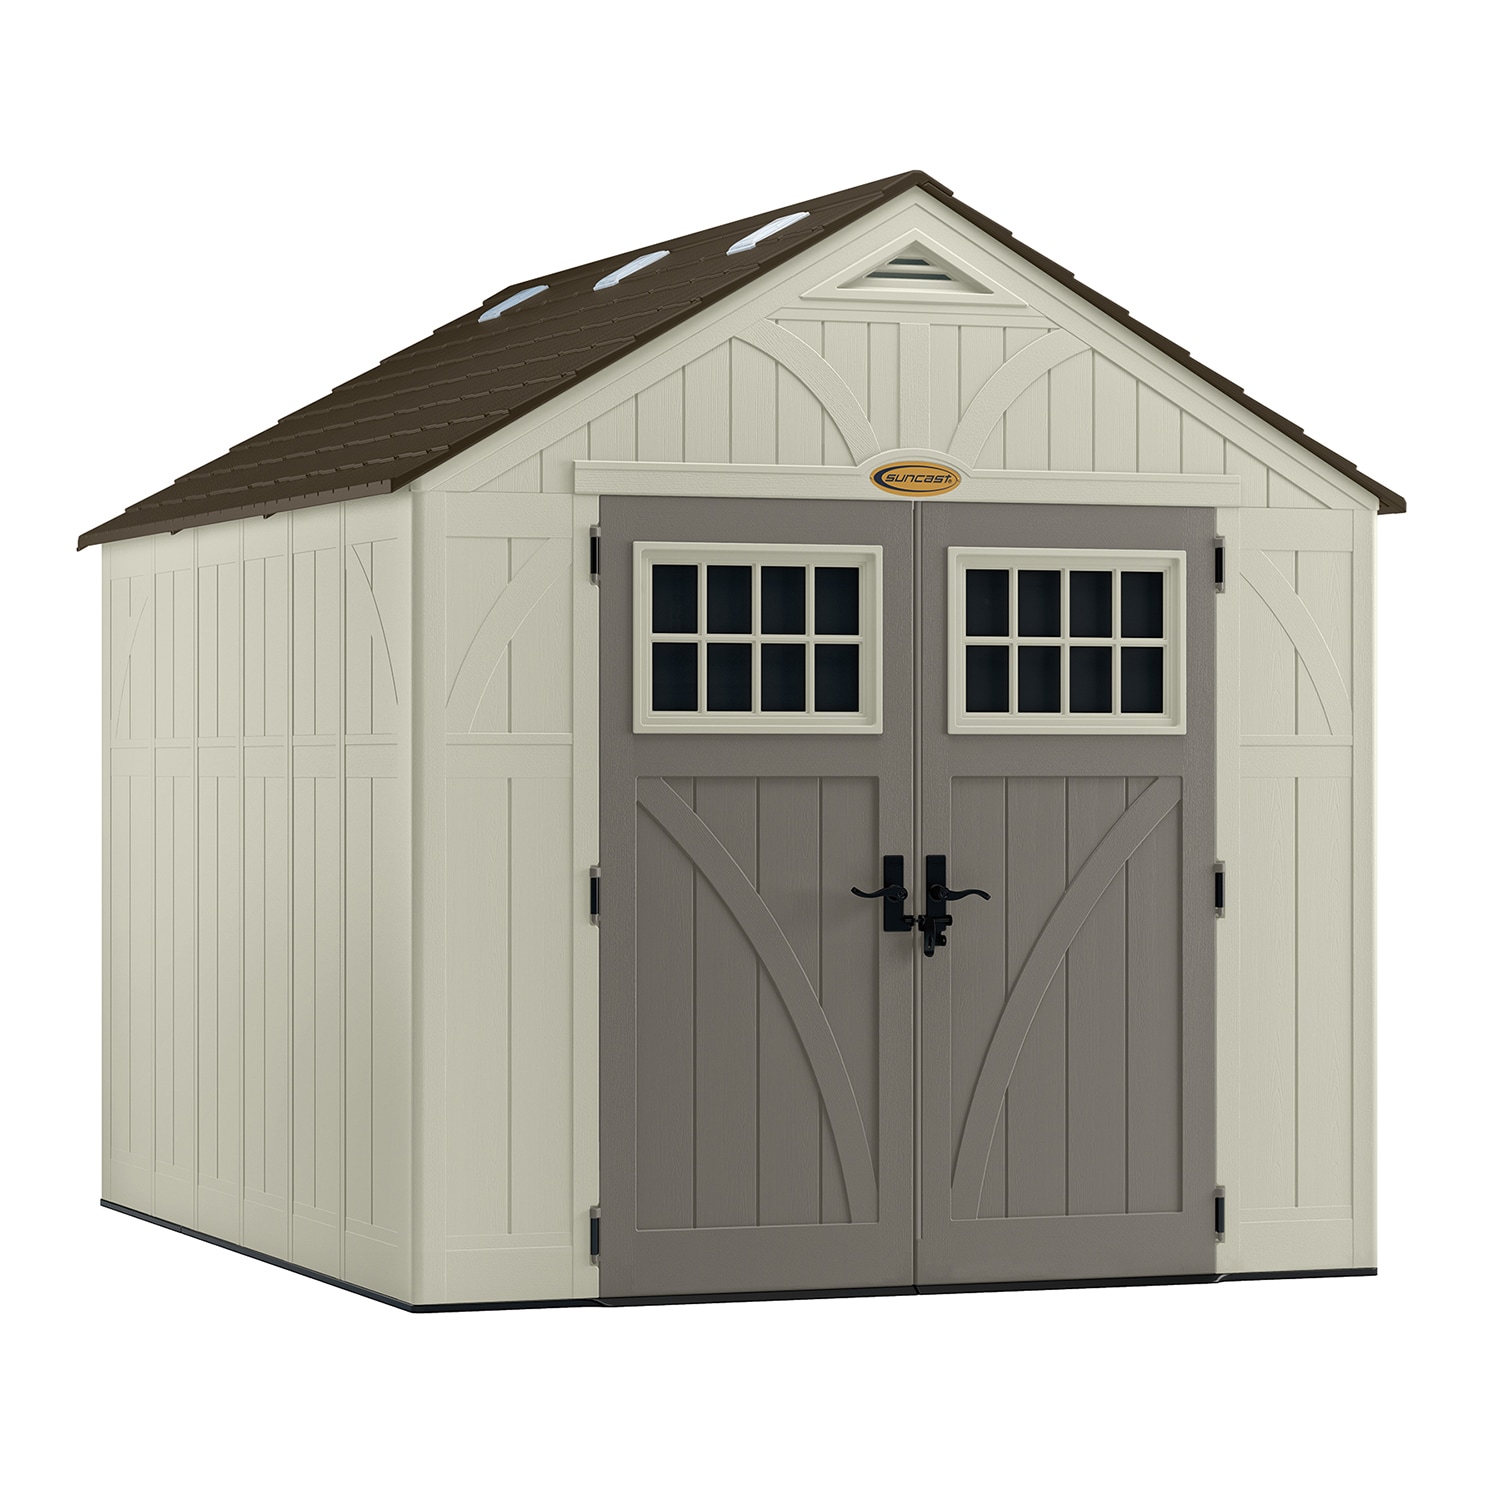 Suncast 8x10 tremont storage shed